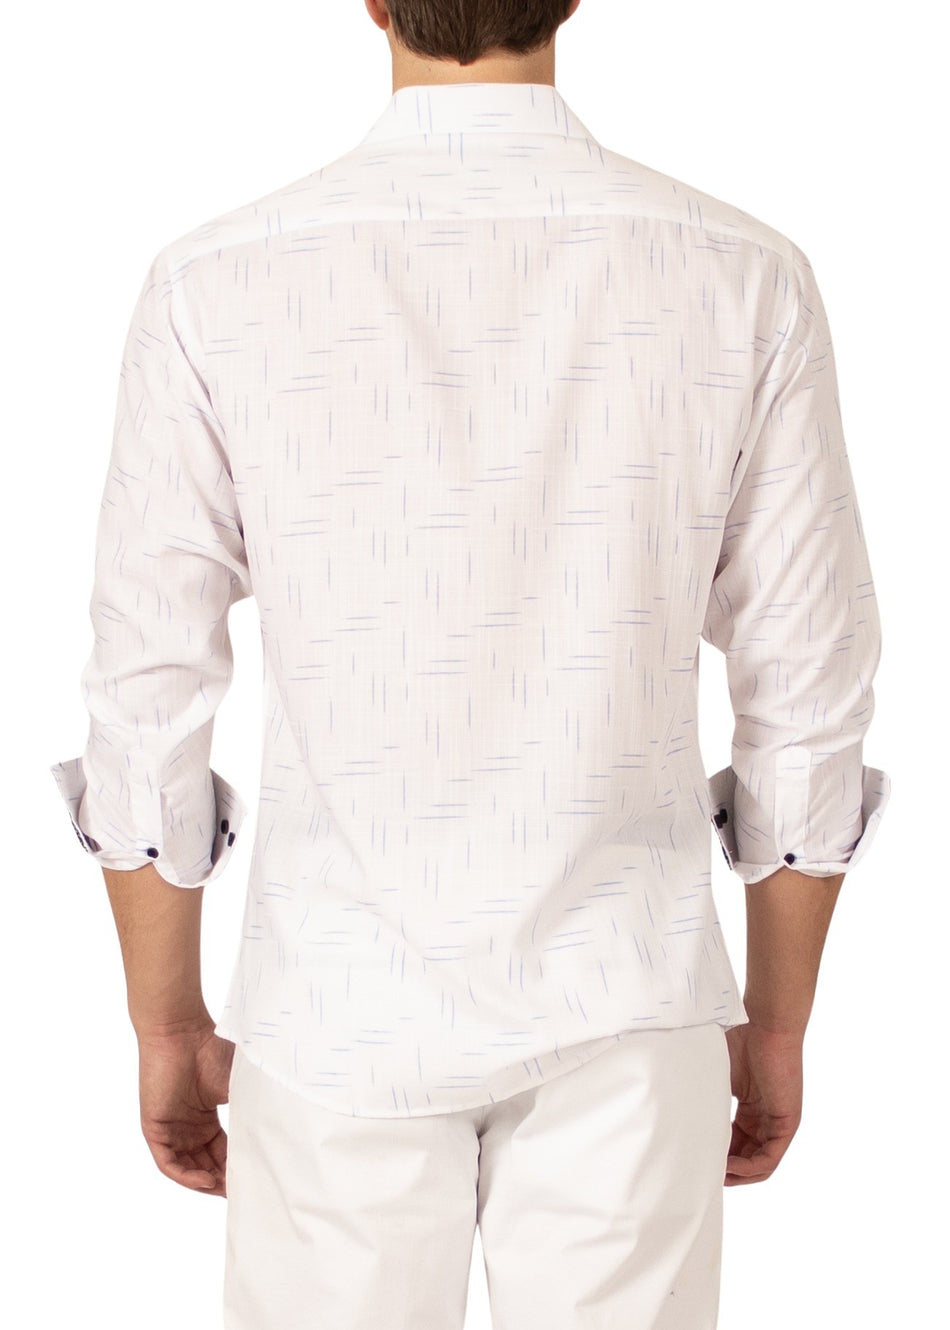 232243 - White Button Up Long Sleeve Dress Shirt